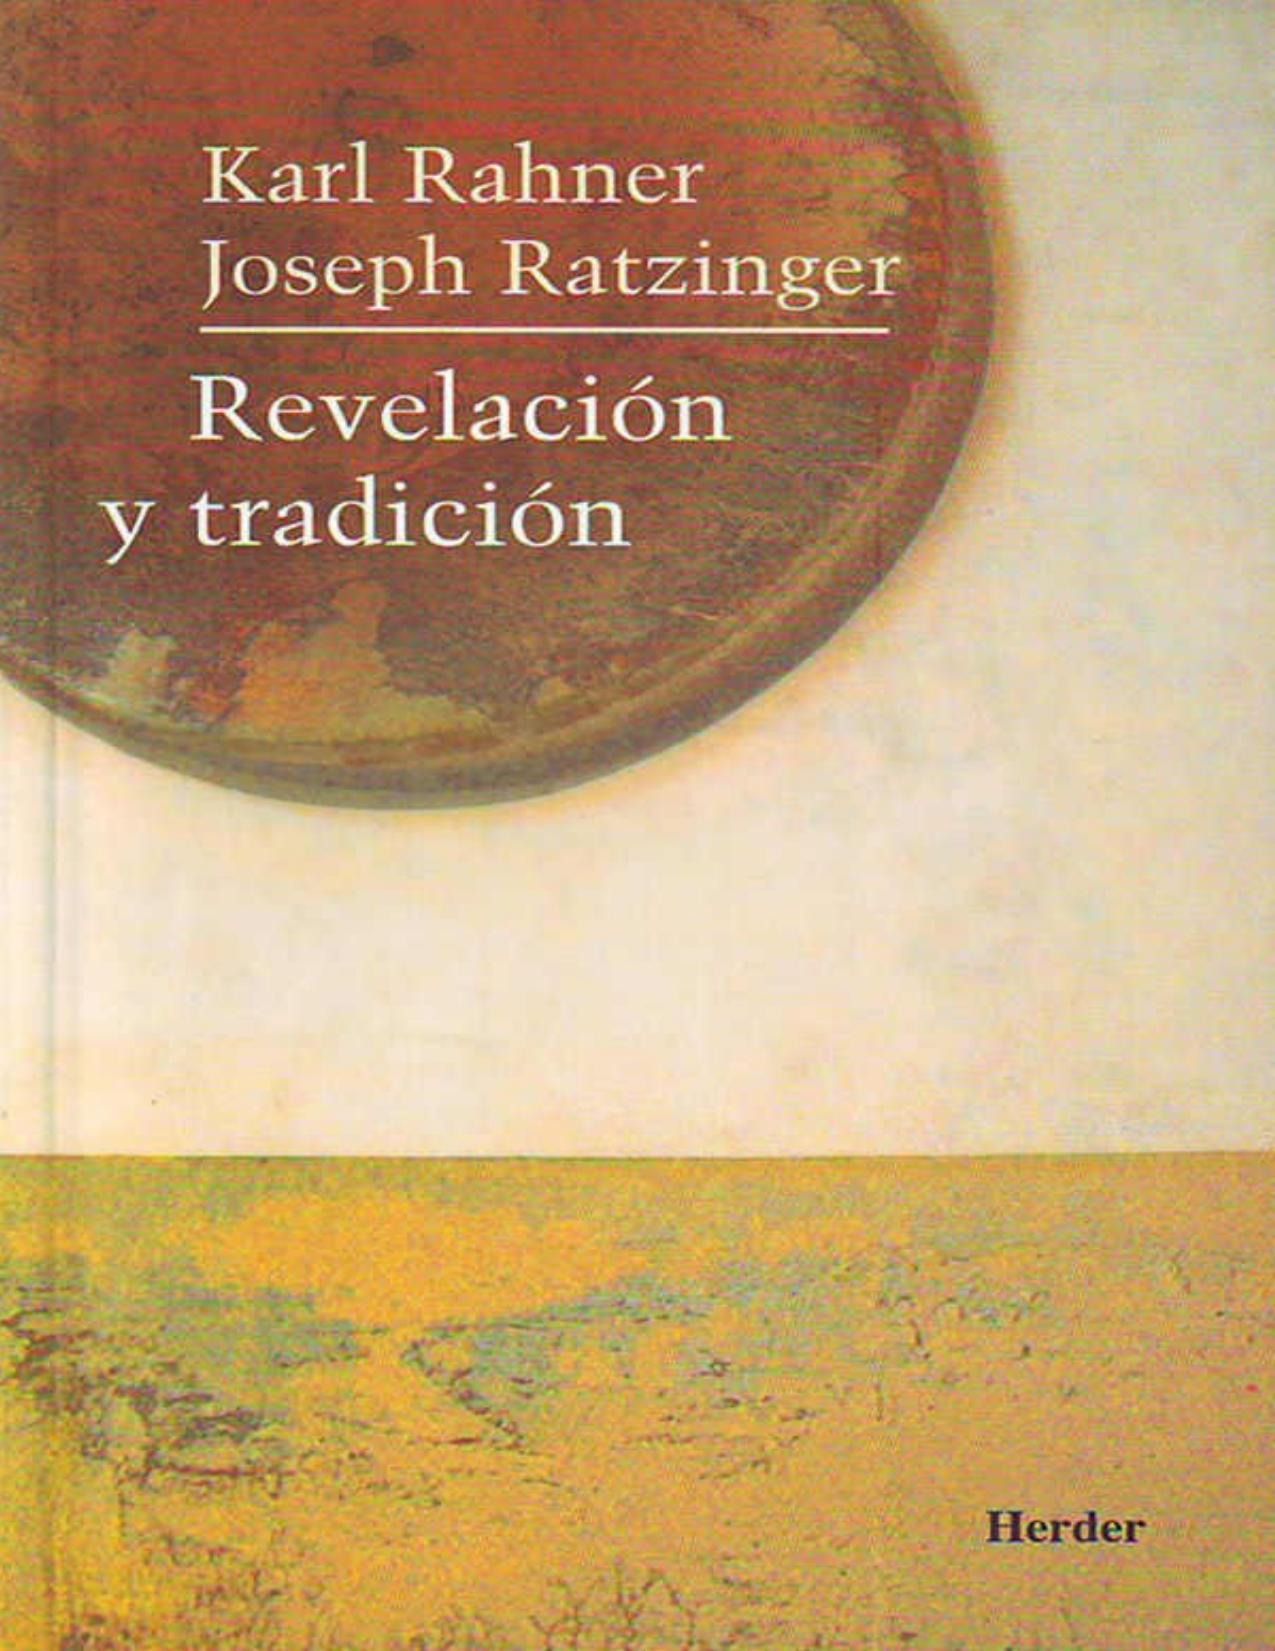 Revelacion y tradicion (Spanish Edition)